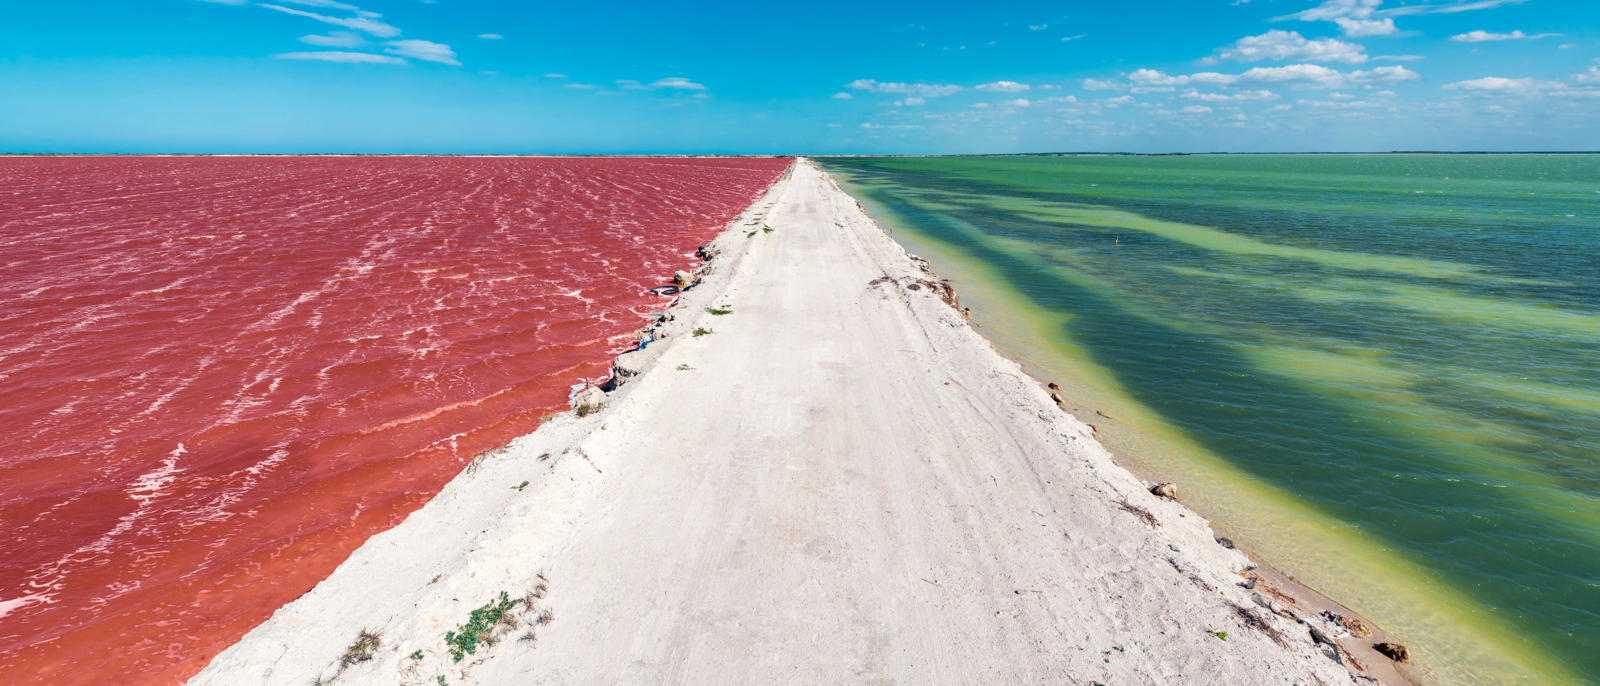 Une route irrégulière avec de l'eau rouge d'un côté et de l'eau verte de l'autre avec un beau ciel bleu près de la ville de Las Coloradas près de Rio Lagartos, Mexique